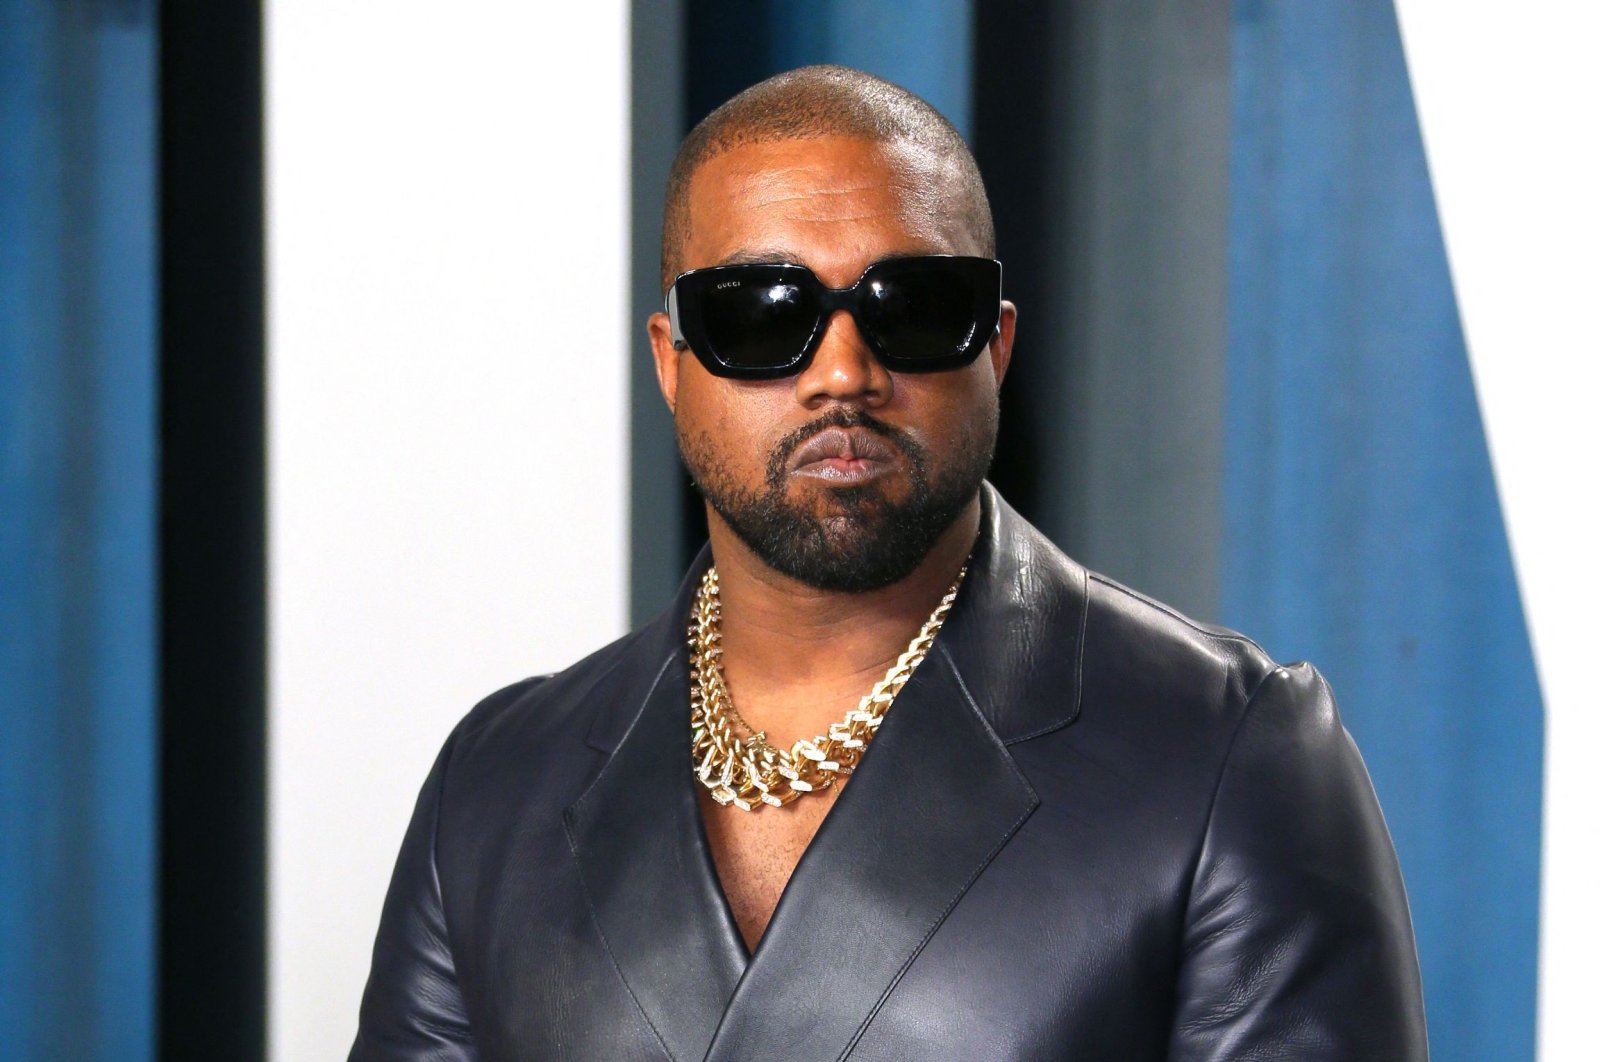 Akun media sosial Kanye West dilarang karena posting ofensif